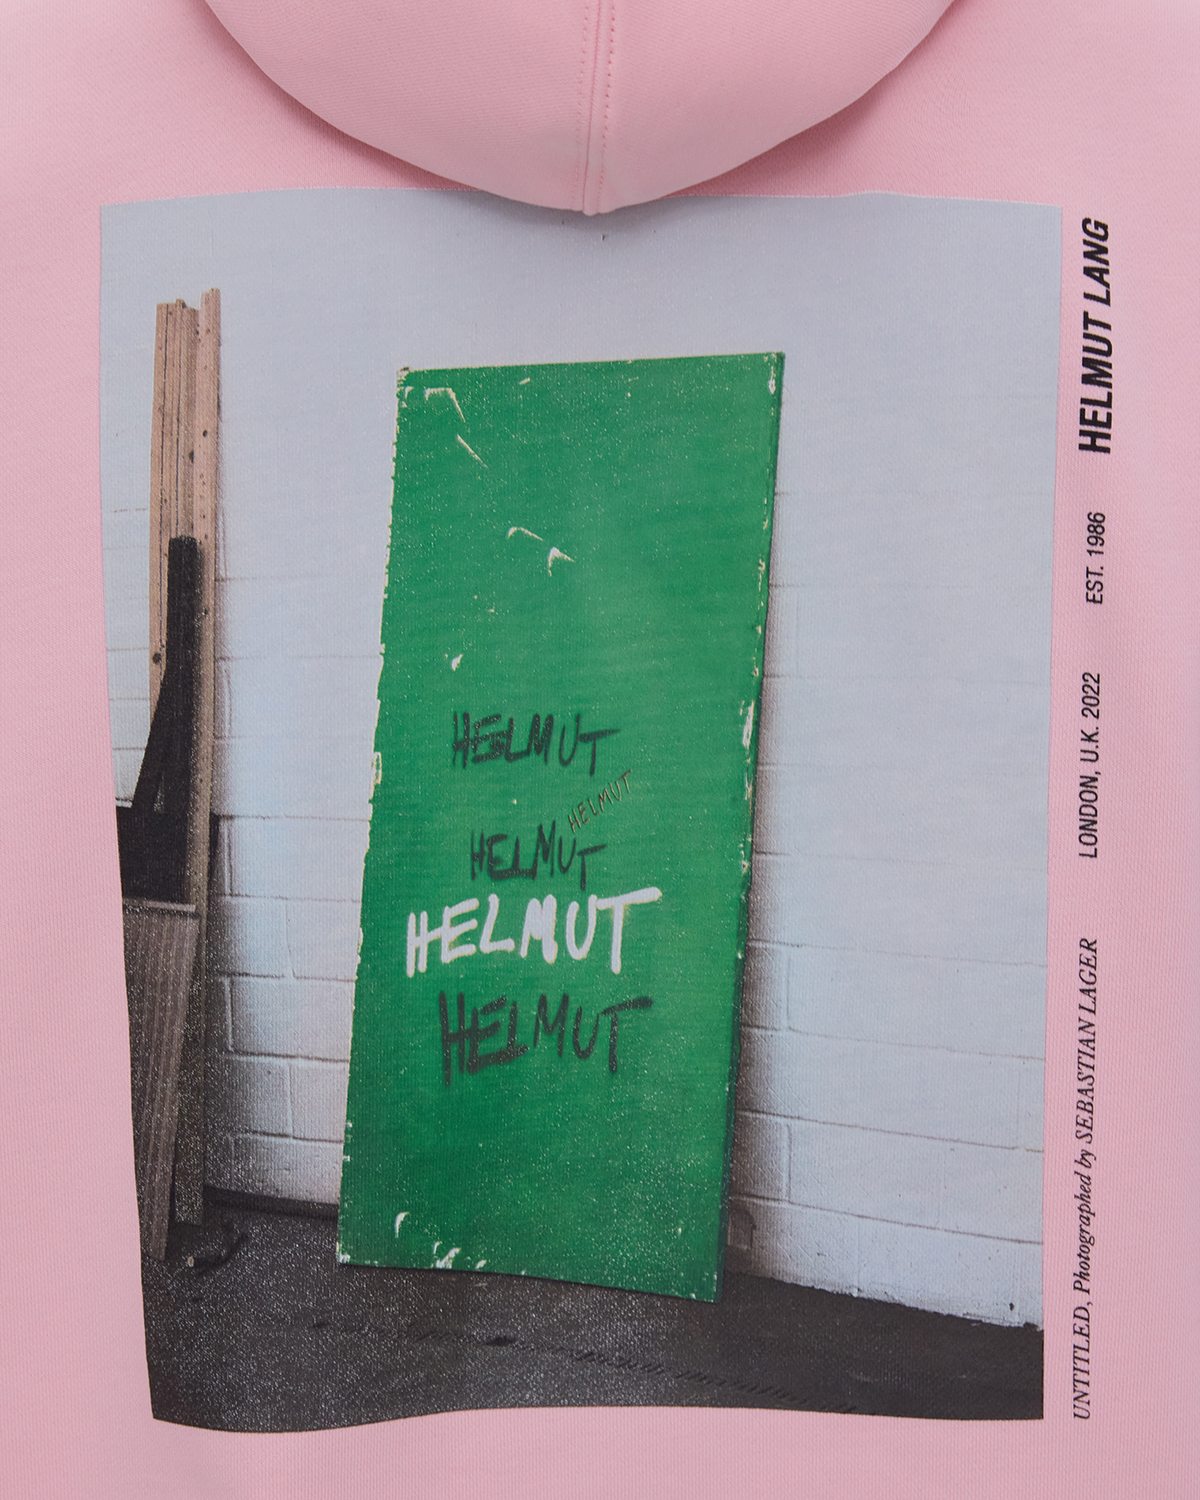 Helmut Lang - Untitled for Sale